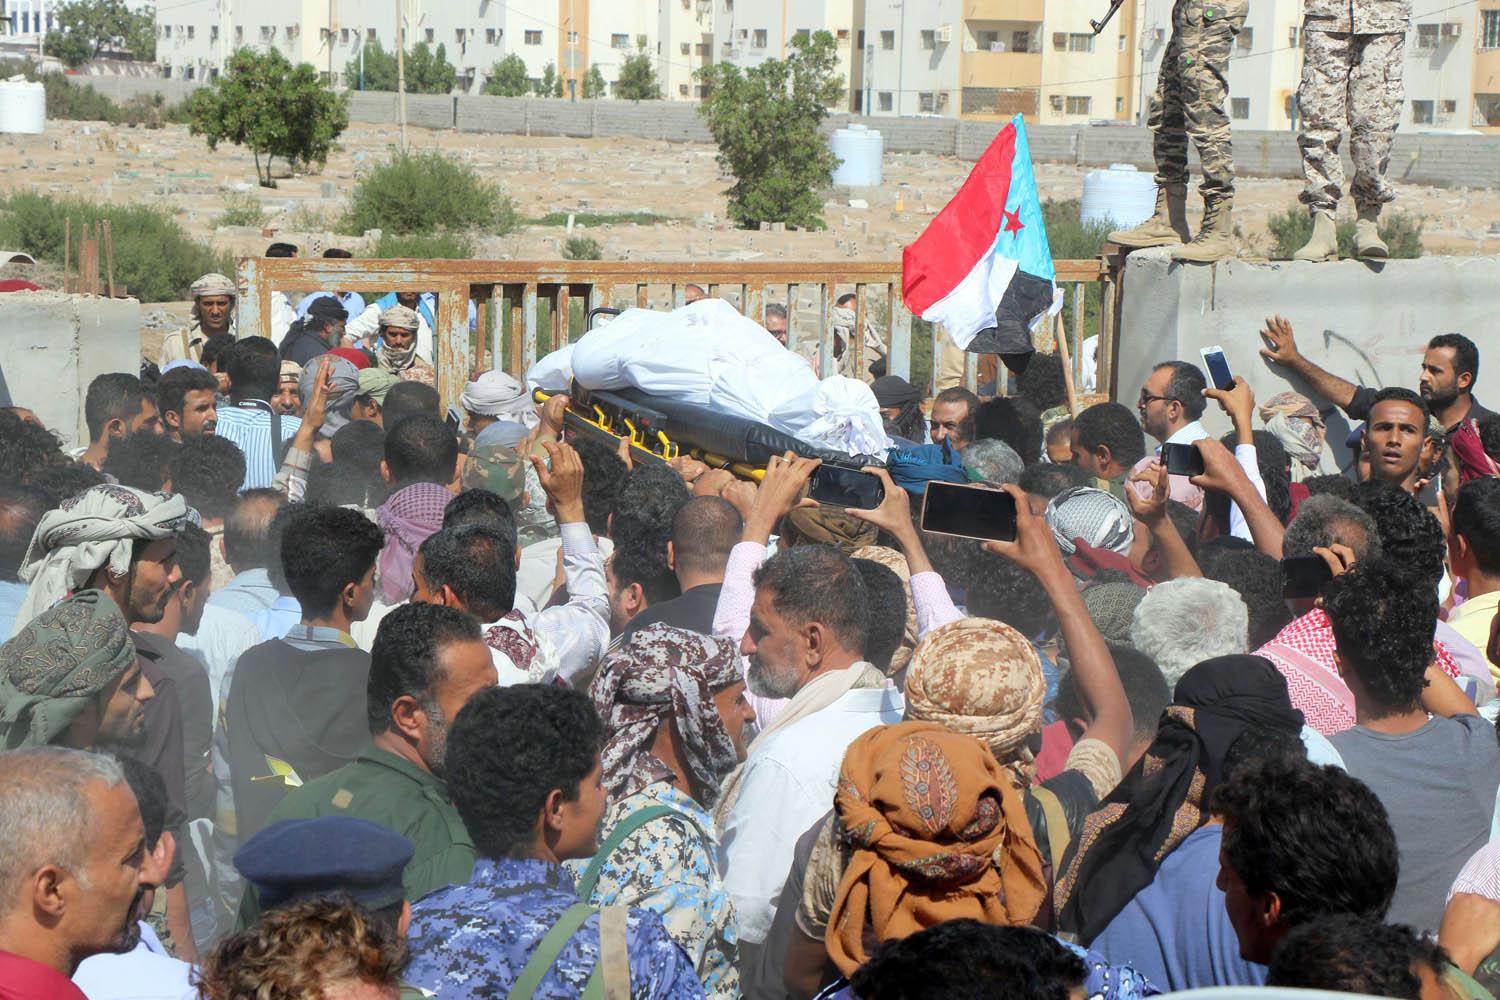 تشييع رئيس المخابرات الحربية محمد صالح طماح الذي قتل بهجوم بطائرة مسيرة حوثية